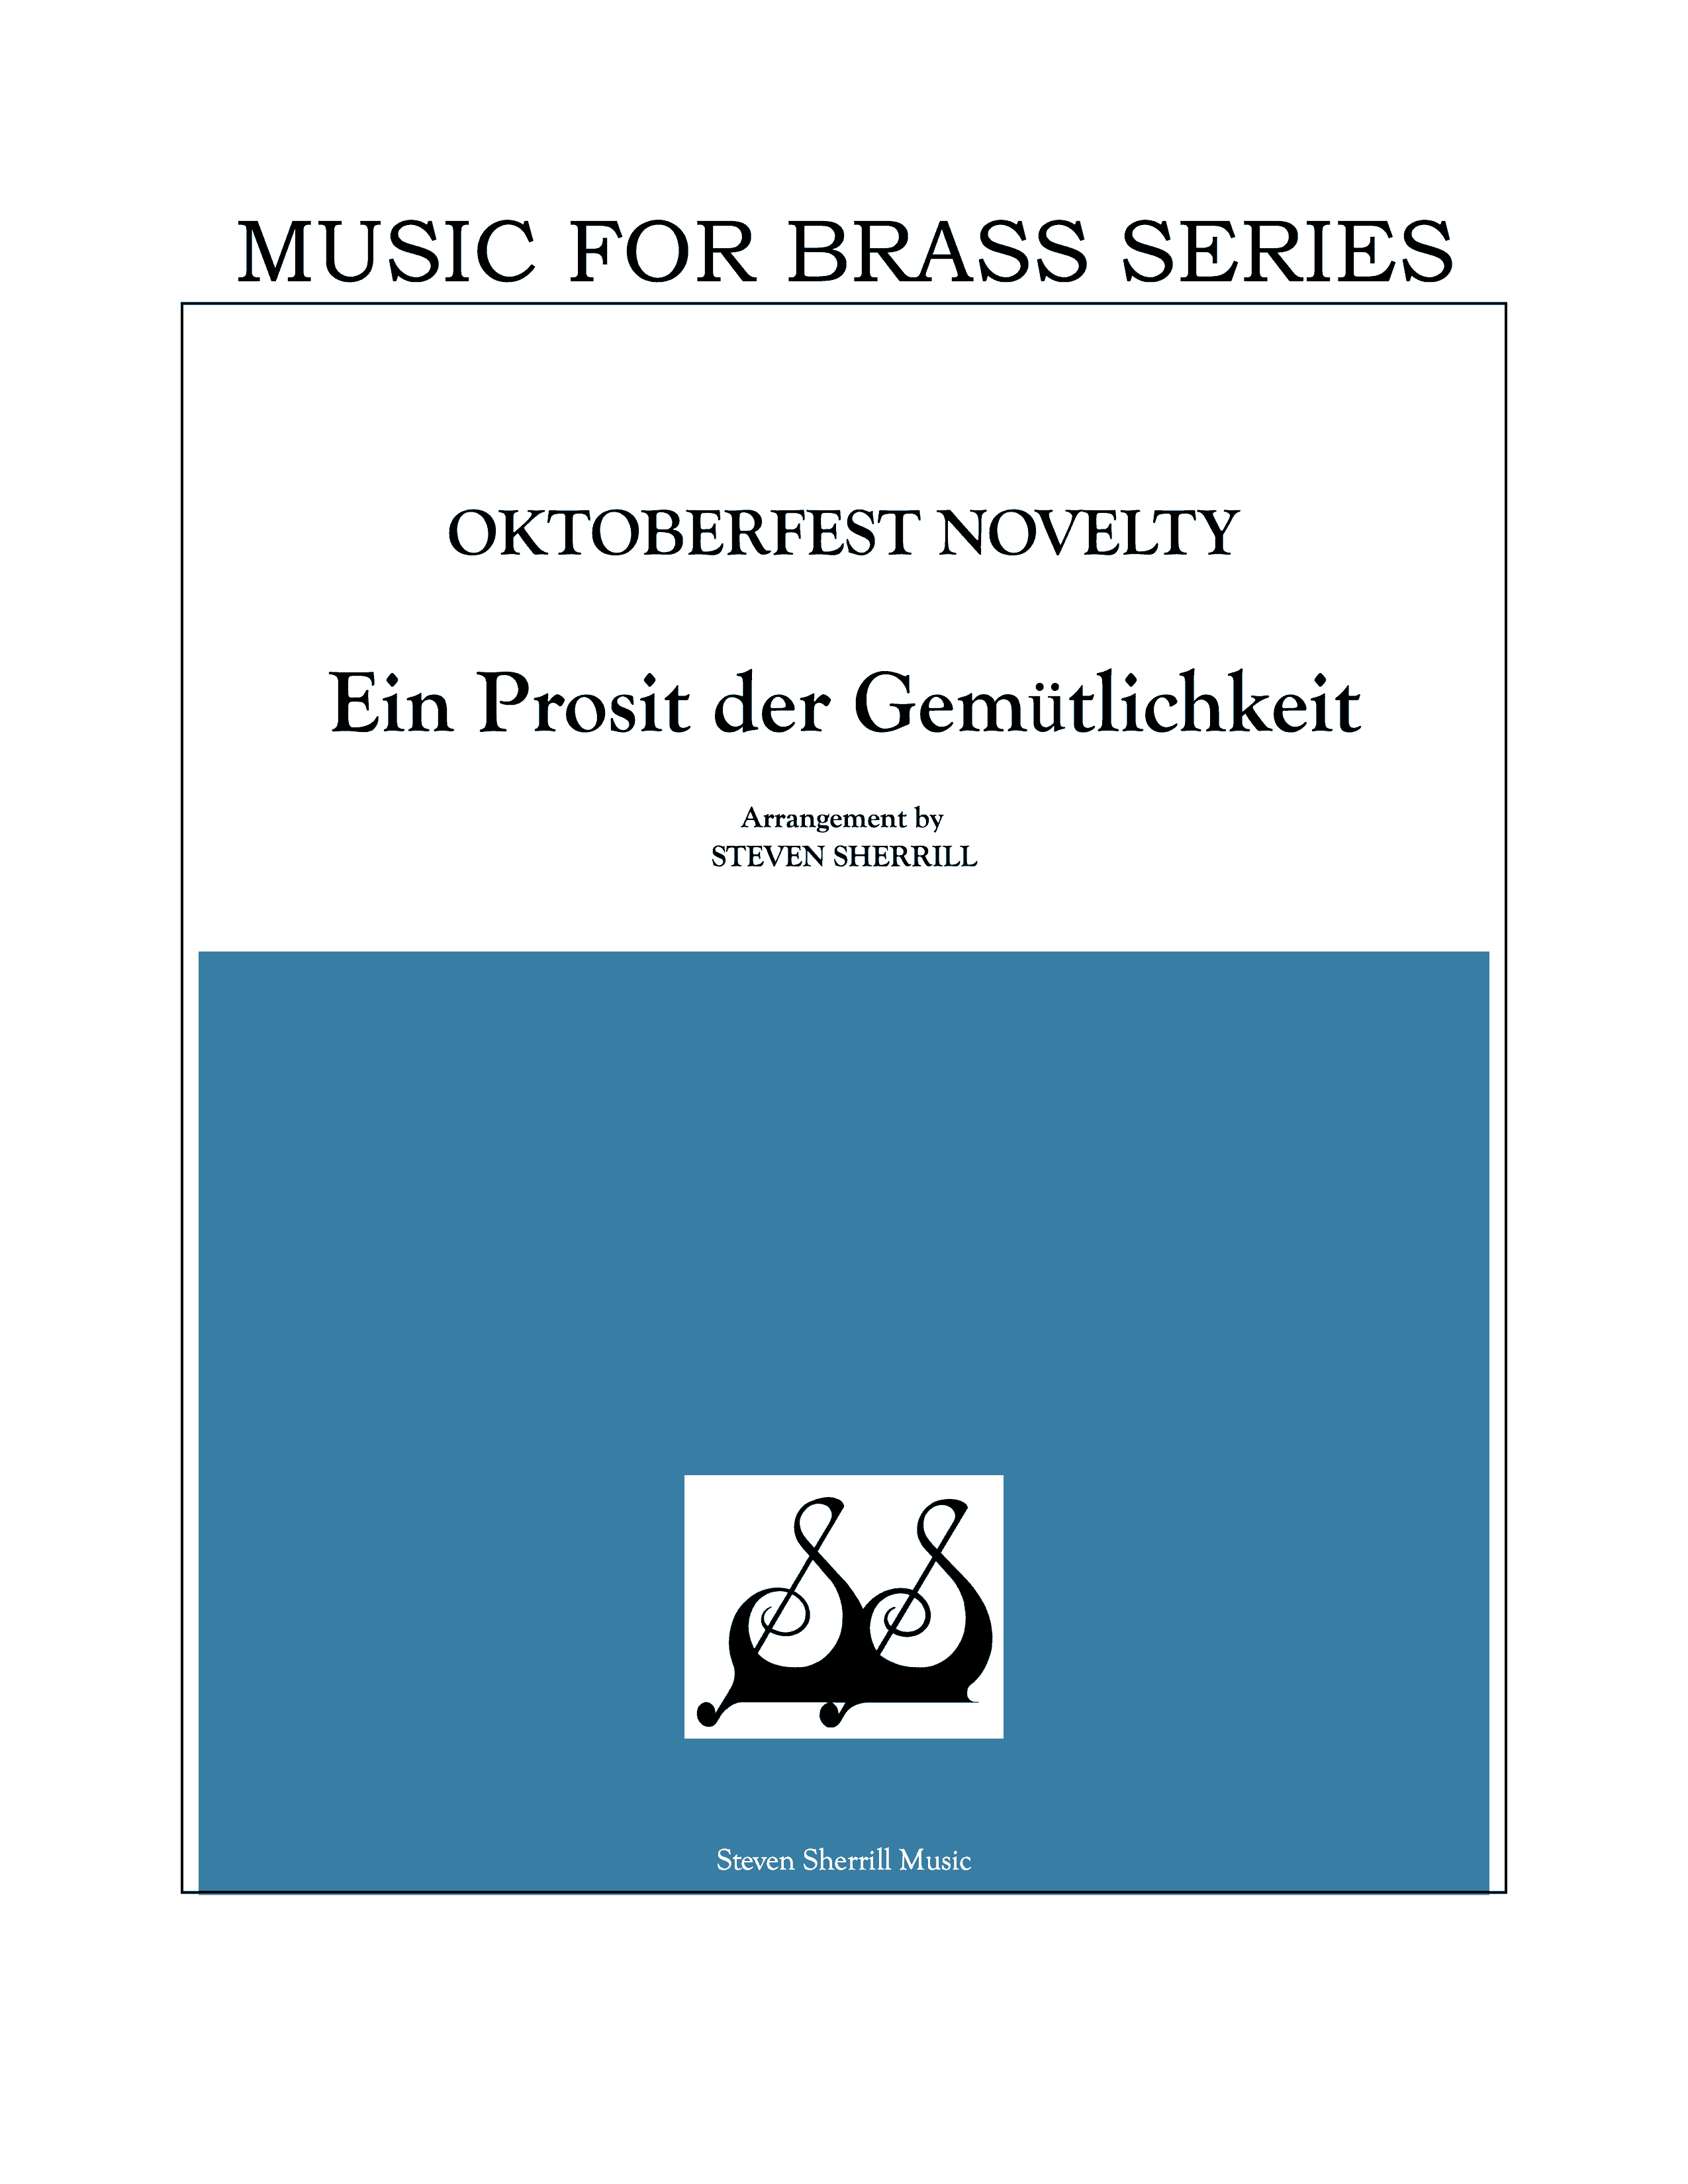 Ein Prosit der Gemtlichkeit  (from 6 Oktoberfest Novelties) cover page